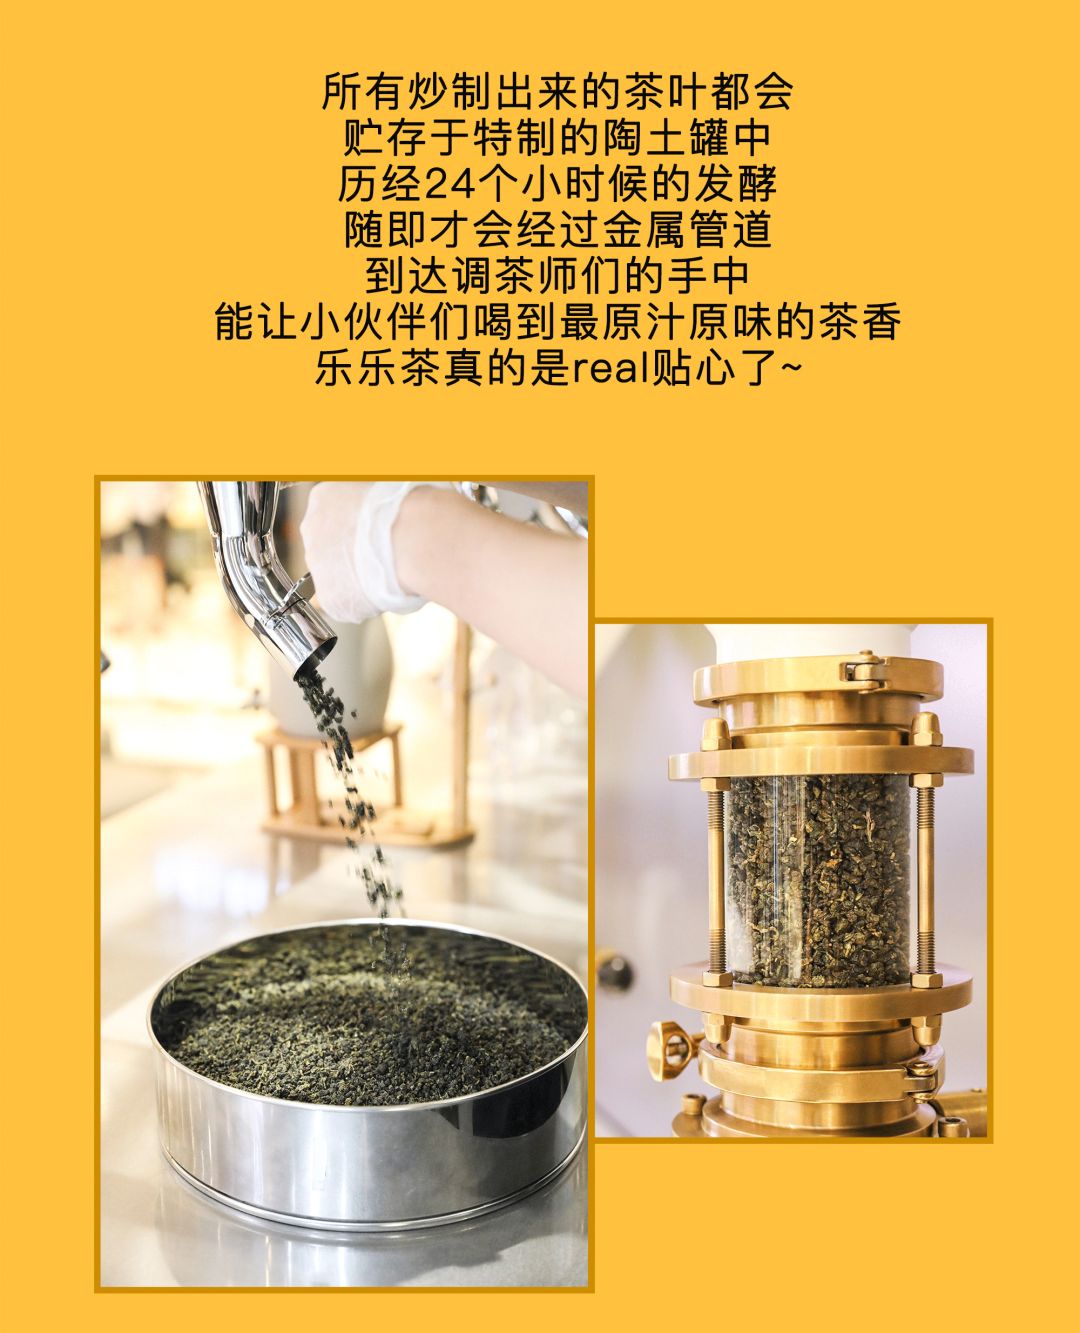 楽楽茶全球首家制茶工场登录魔都！最全新品点单攻略就在这里！